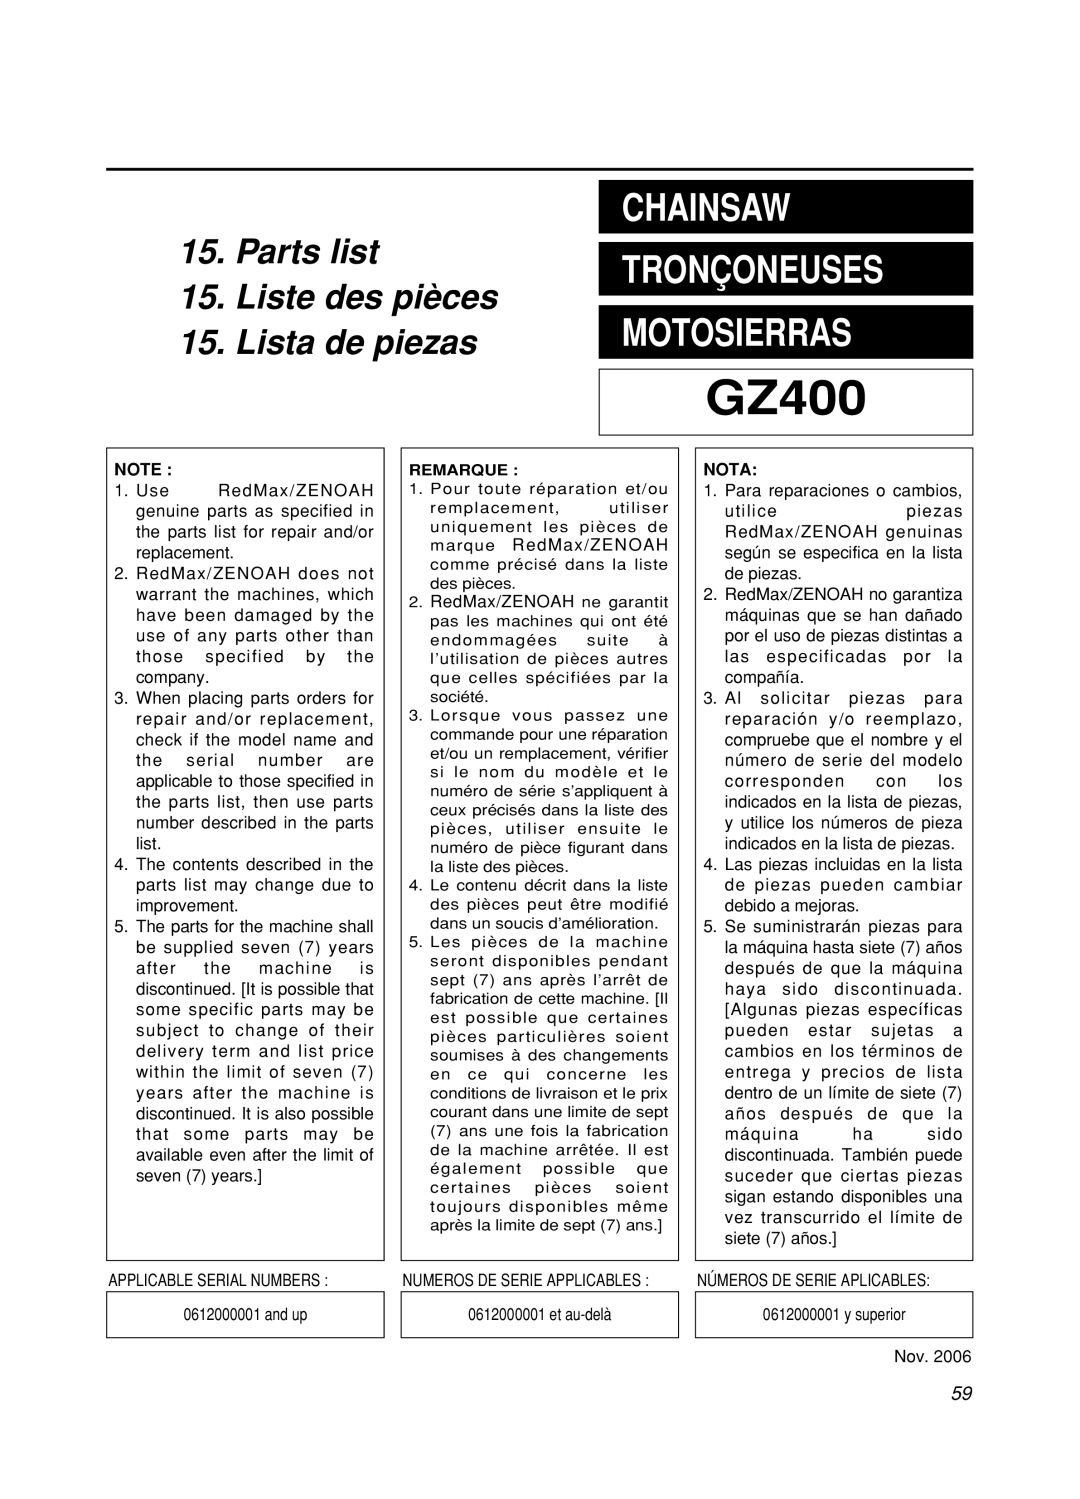 Zenoah GZ400 manual Chainsaw, Motosierras, Parts list, Liste des pièces, Lista de piezas, Tronçoneuses 